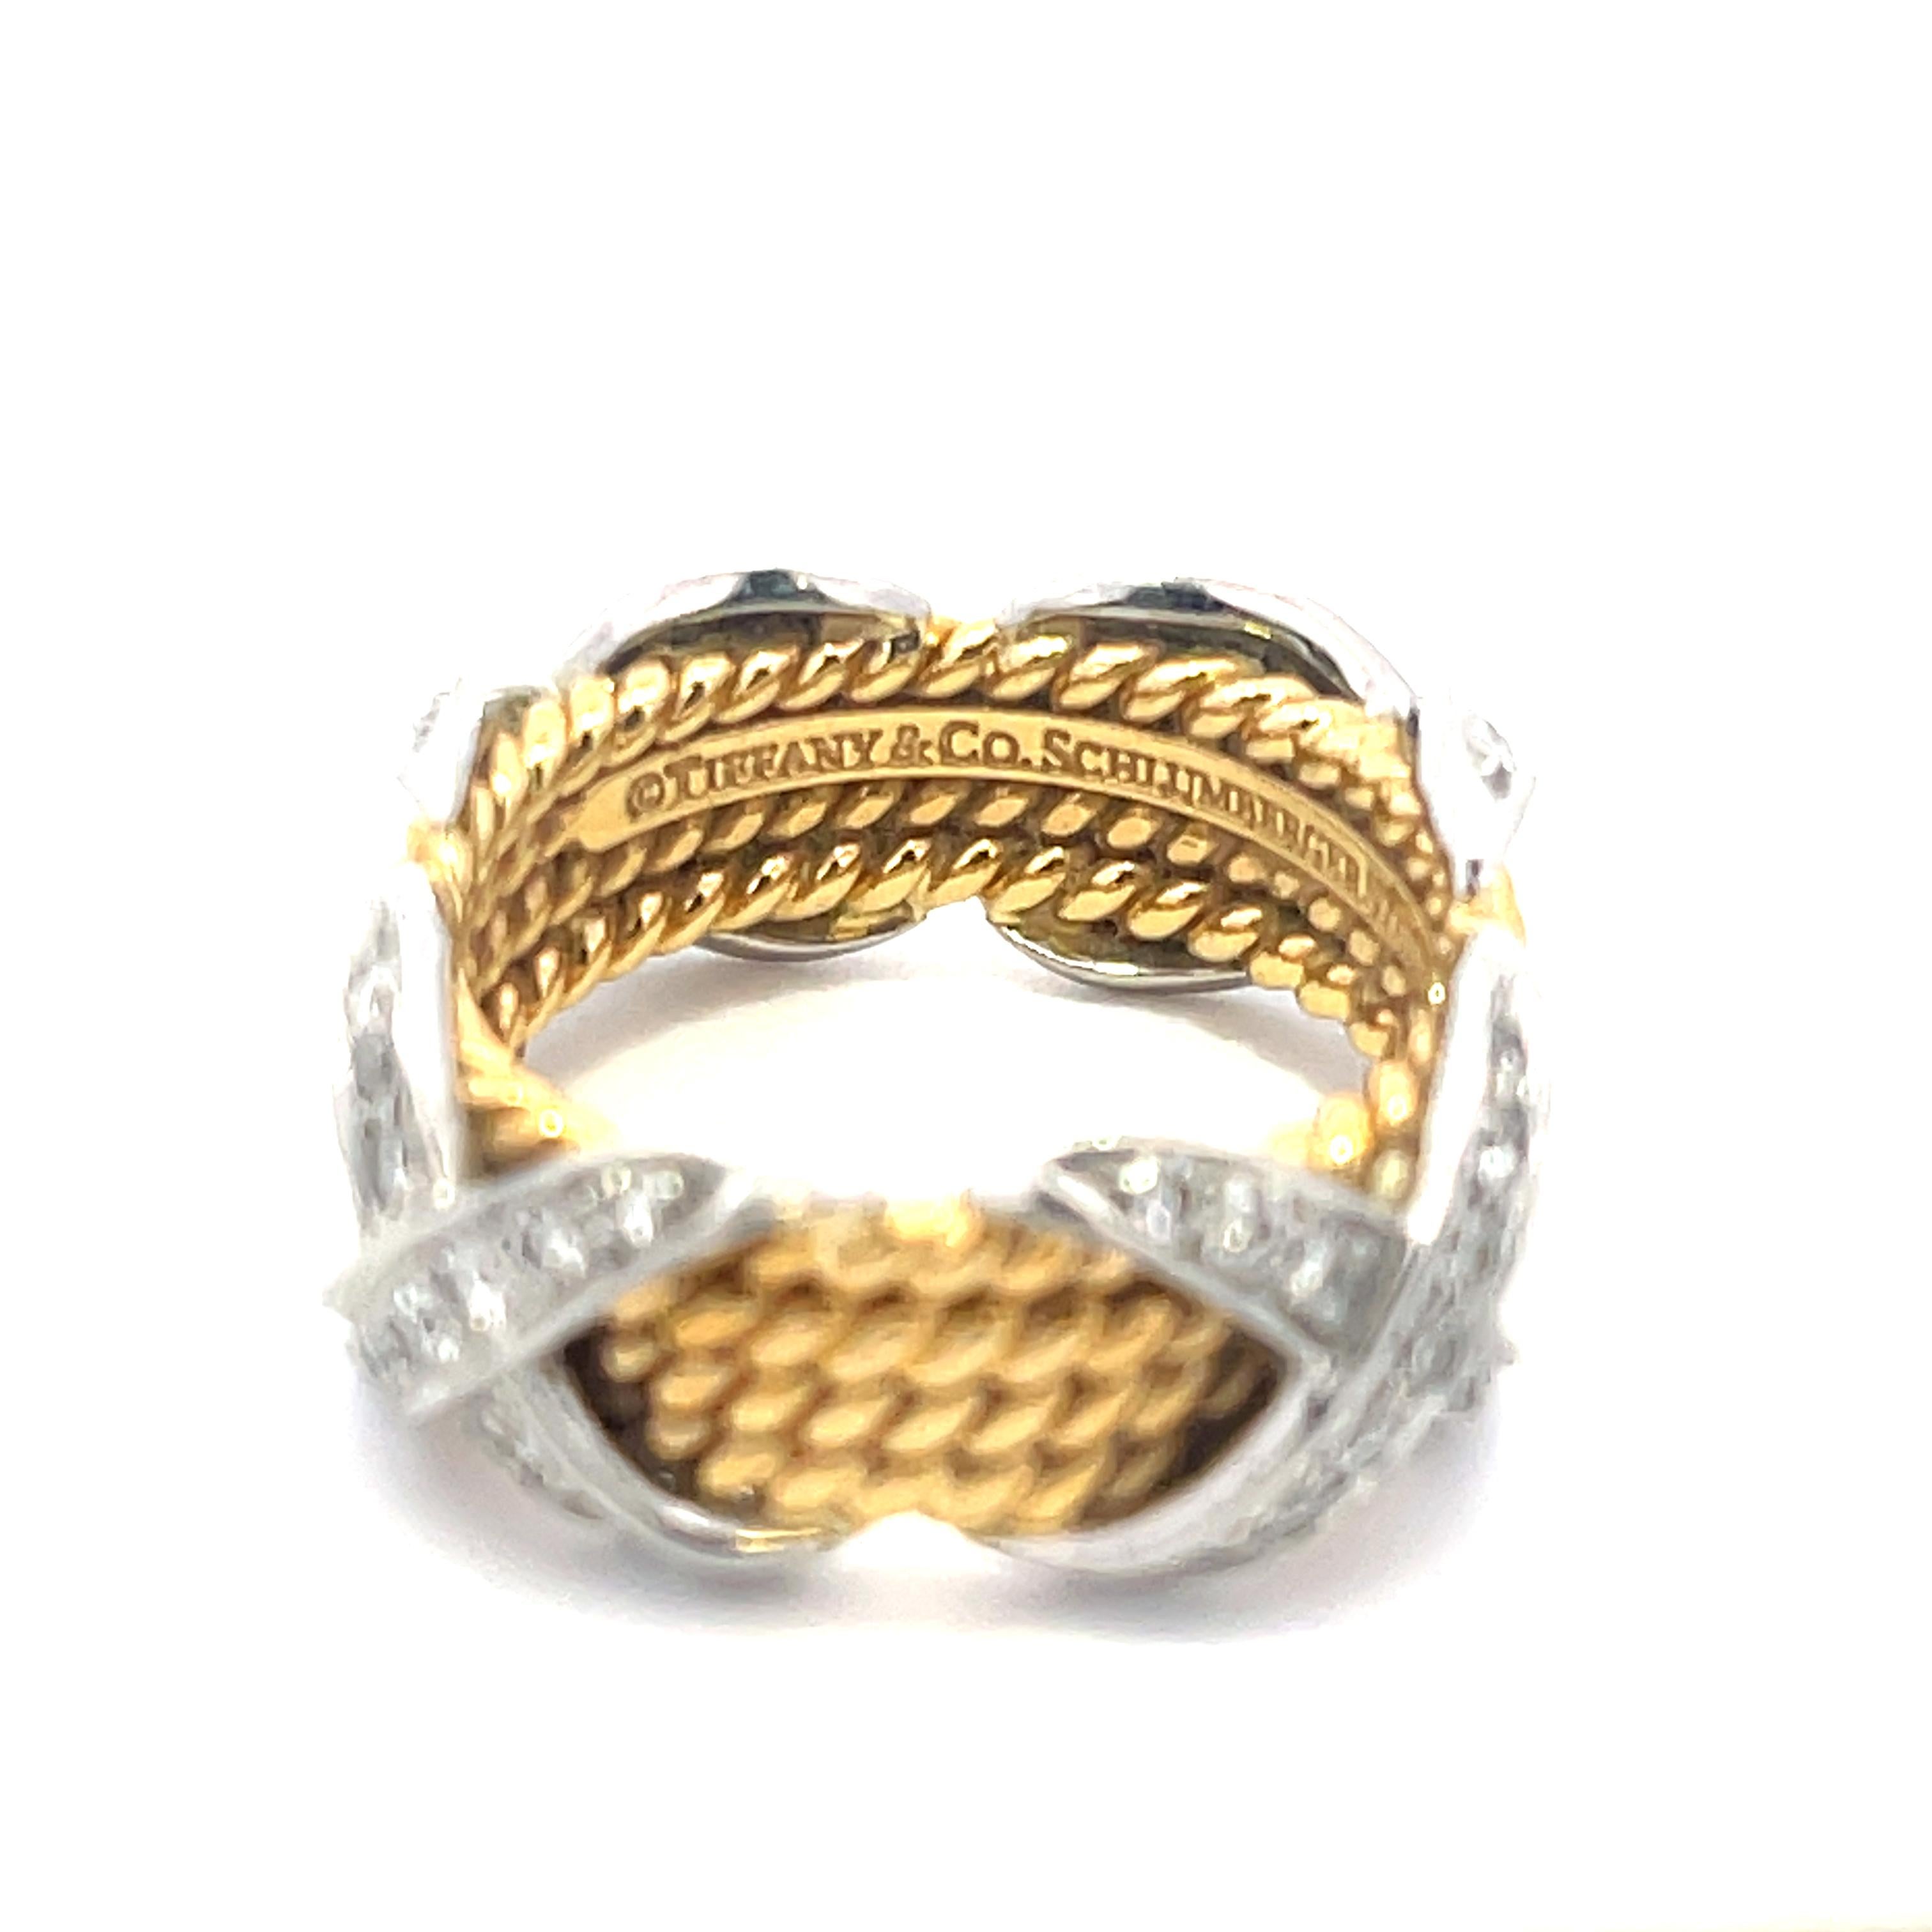 Nachlass Tiffany & Co. Schlumberger Vierreihiger X-Diamantring aus Platin und 18 Karat Gelbgold. Der Ring besteht aus ca. 0,50 ct runden Brillanten. Der Ring hat die Größe 5 1/2, wiegt 10,5 Gramm und ist 8,7 mm breit. Tiffany&Co Schlumberger Studios